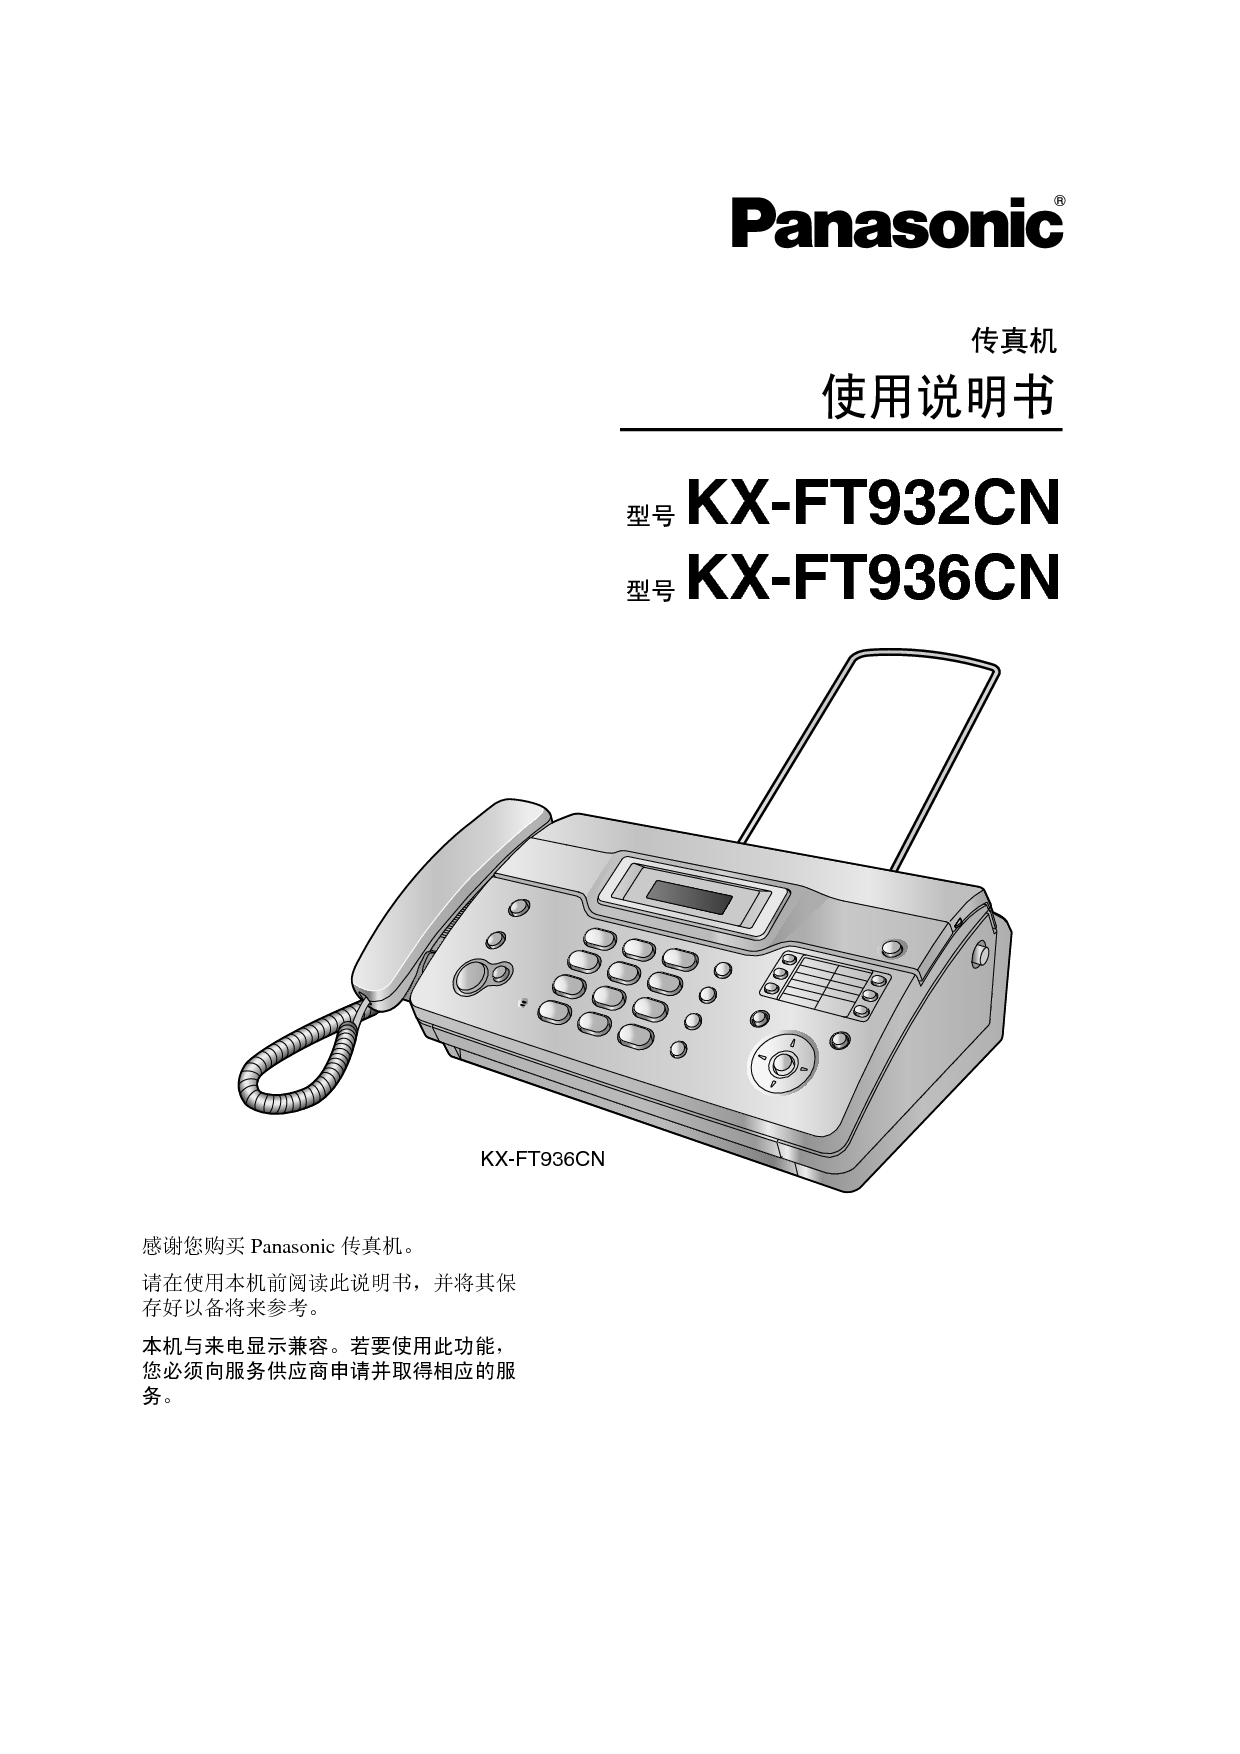 松下 Panasonic KX-FT932CN 说明书 封面